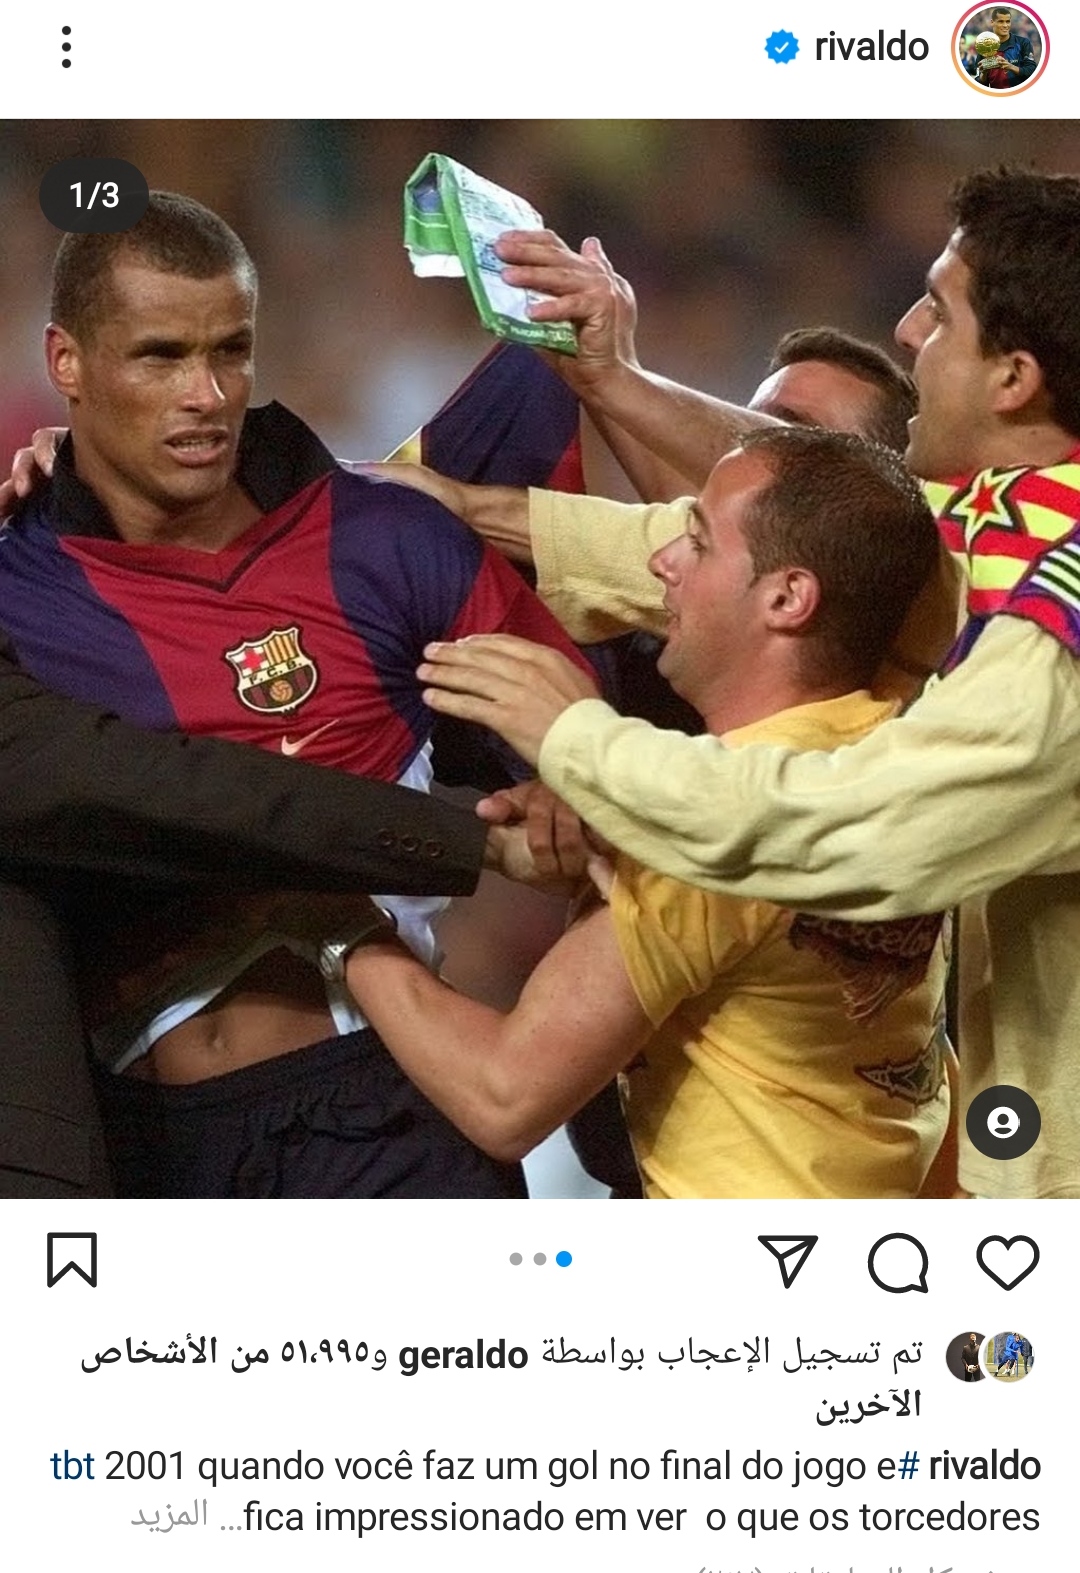 Rivaldo on Instagram